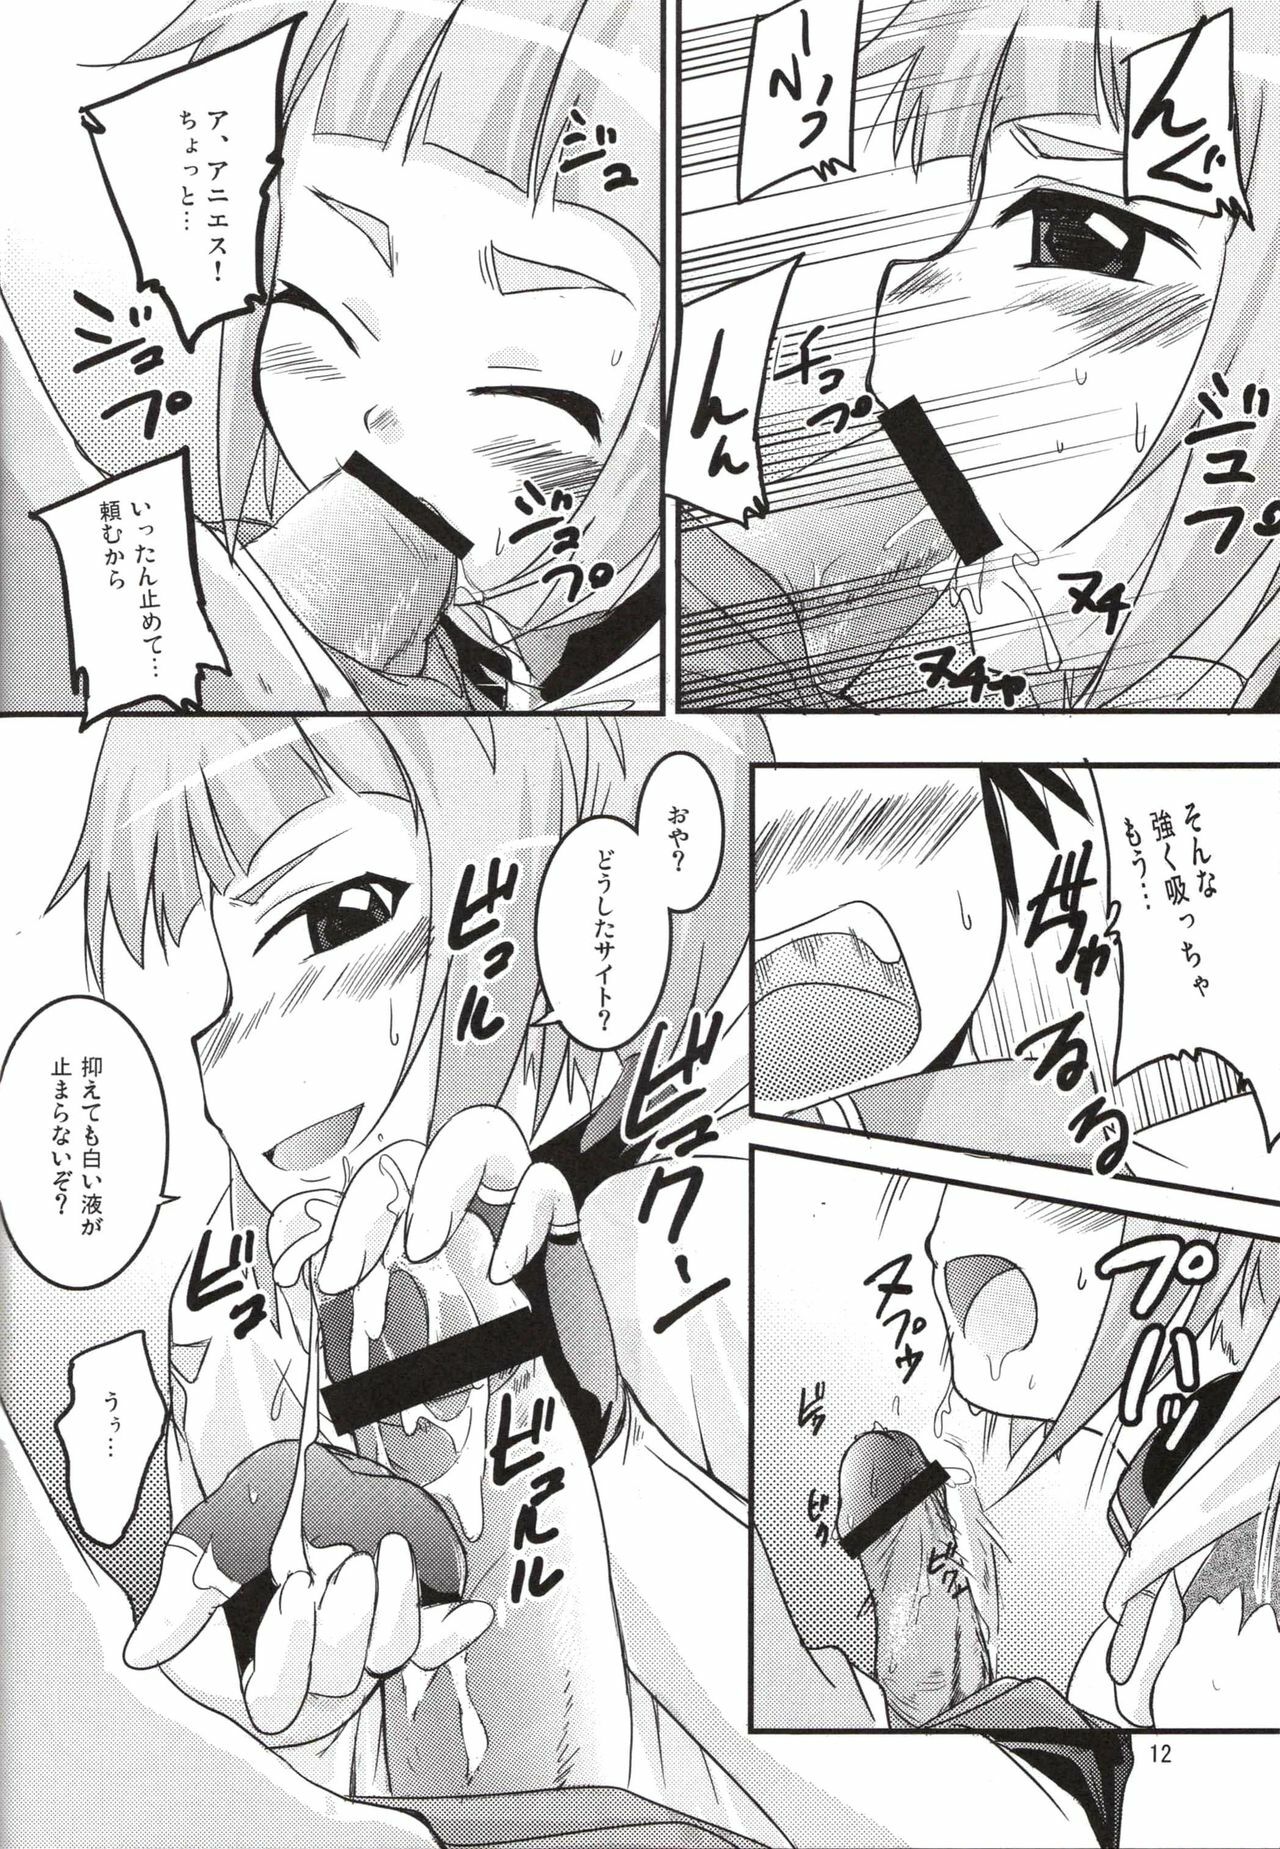 (SC37) [SOUND STICKER (Yoshida Masahiko)] Odekoron Knight (Zero no Tsukaima) page 12 full